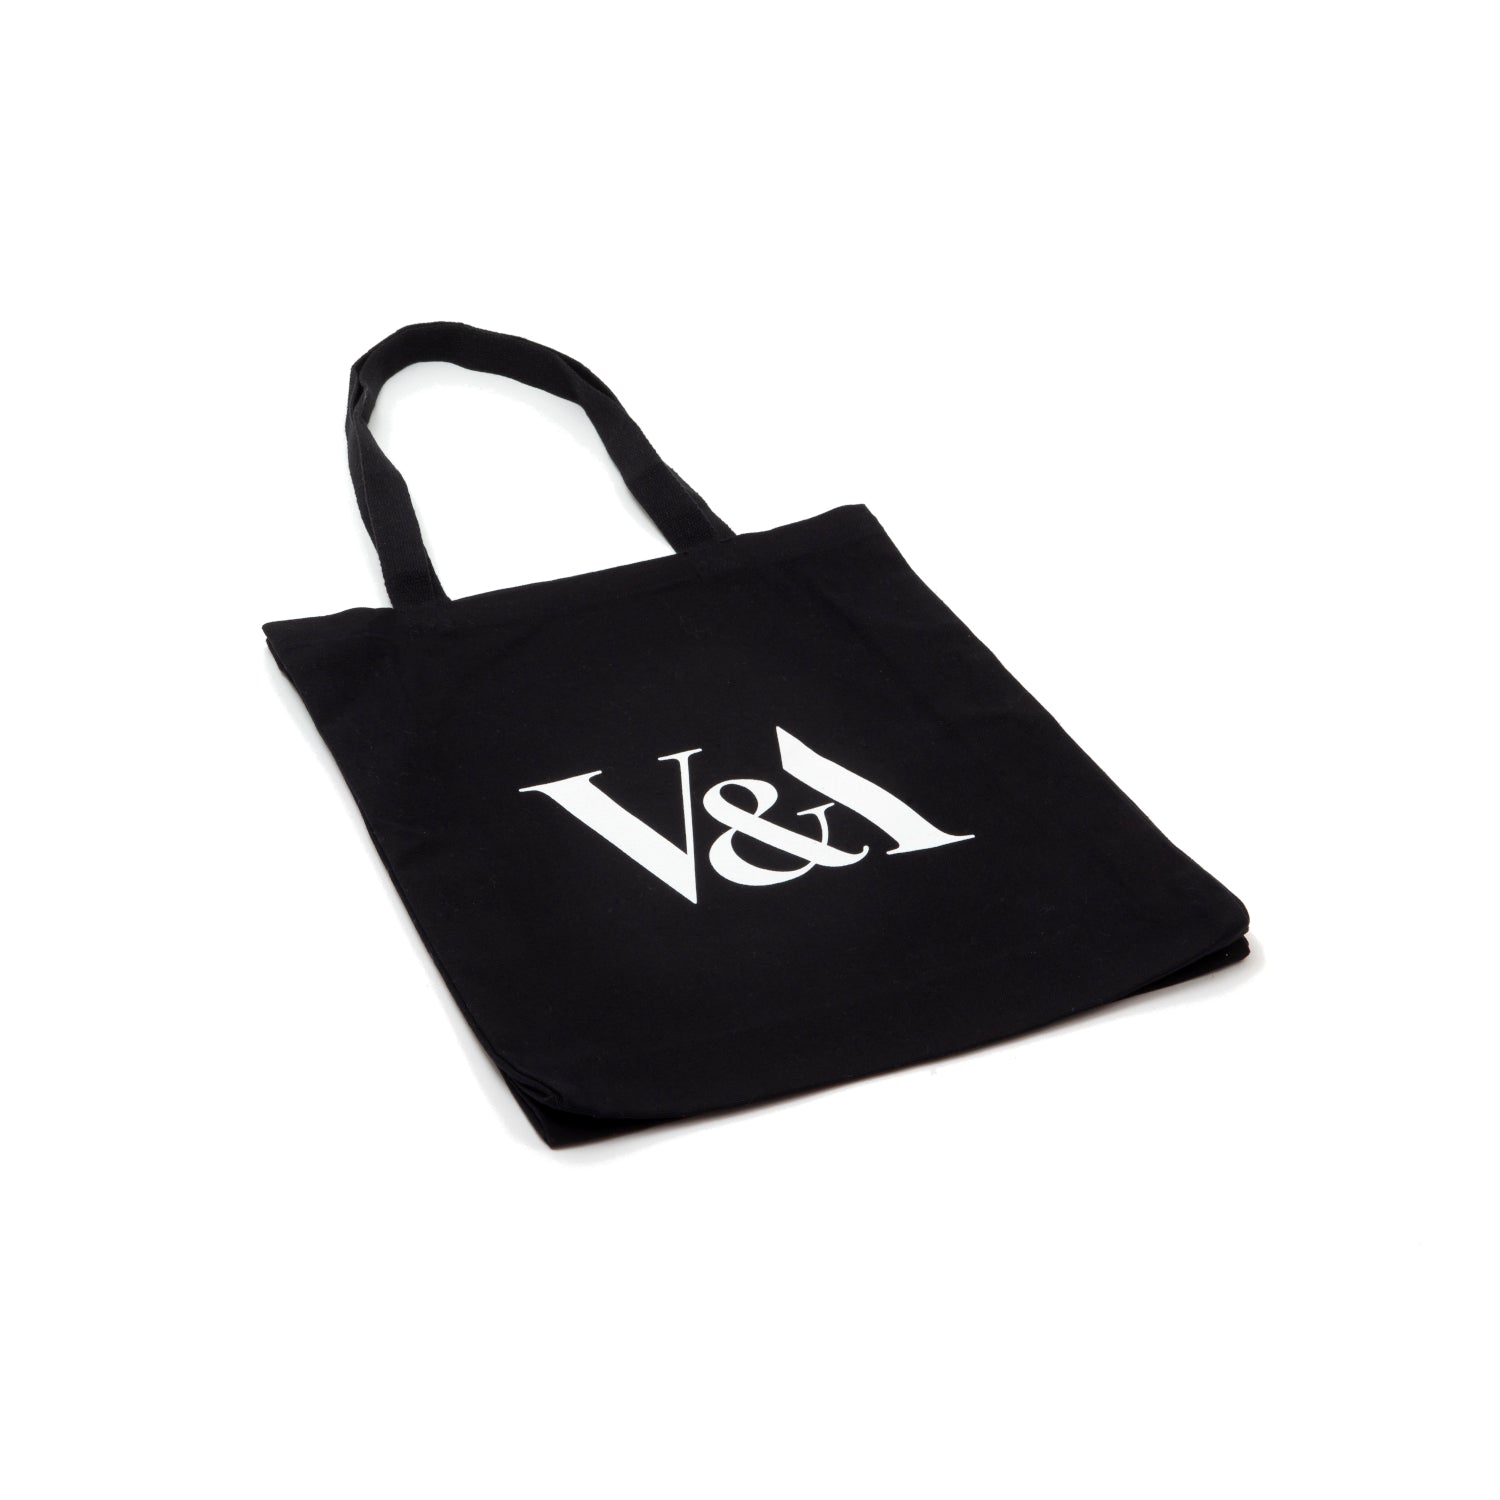 V&A Grey and Black Plaid Tote Bag – V&A Dundee Shop